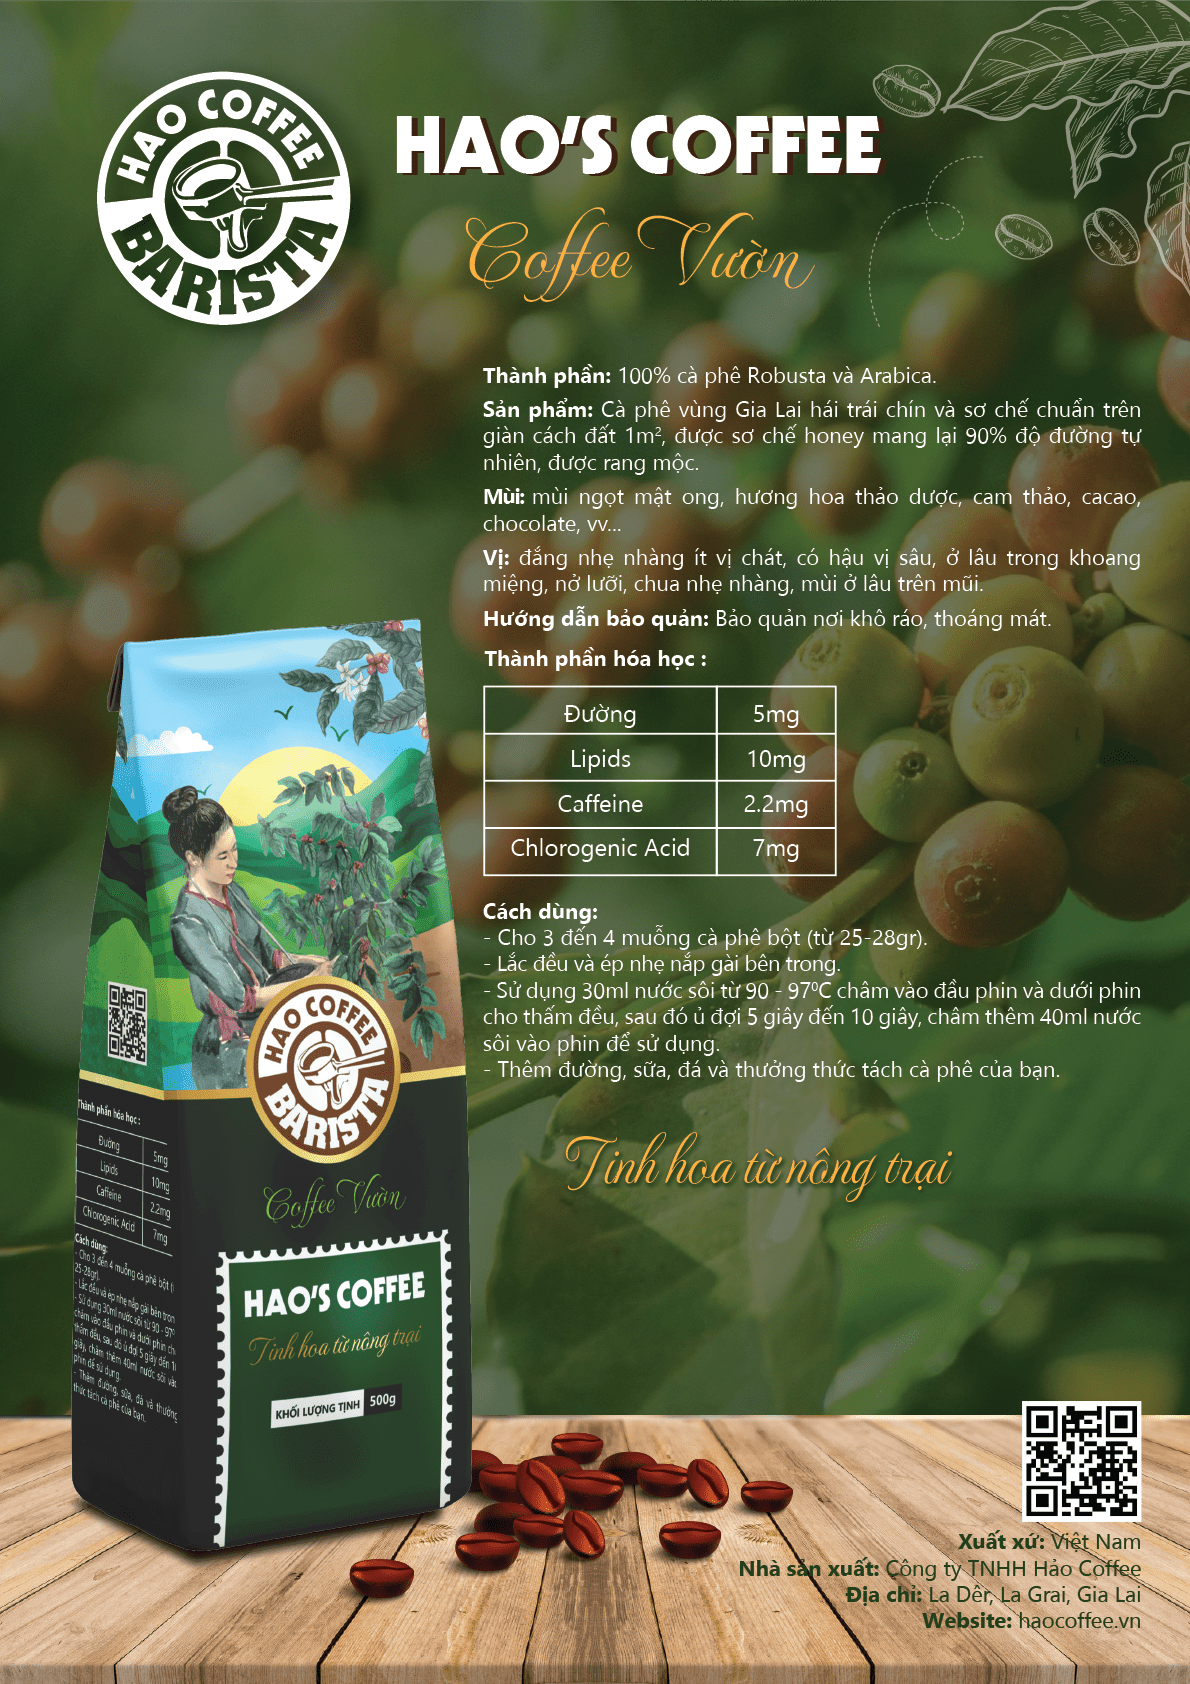 Green Hao Coffee - Sản phẩm của Công ty TNHH Hảo Coffee